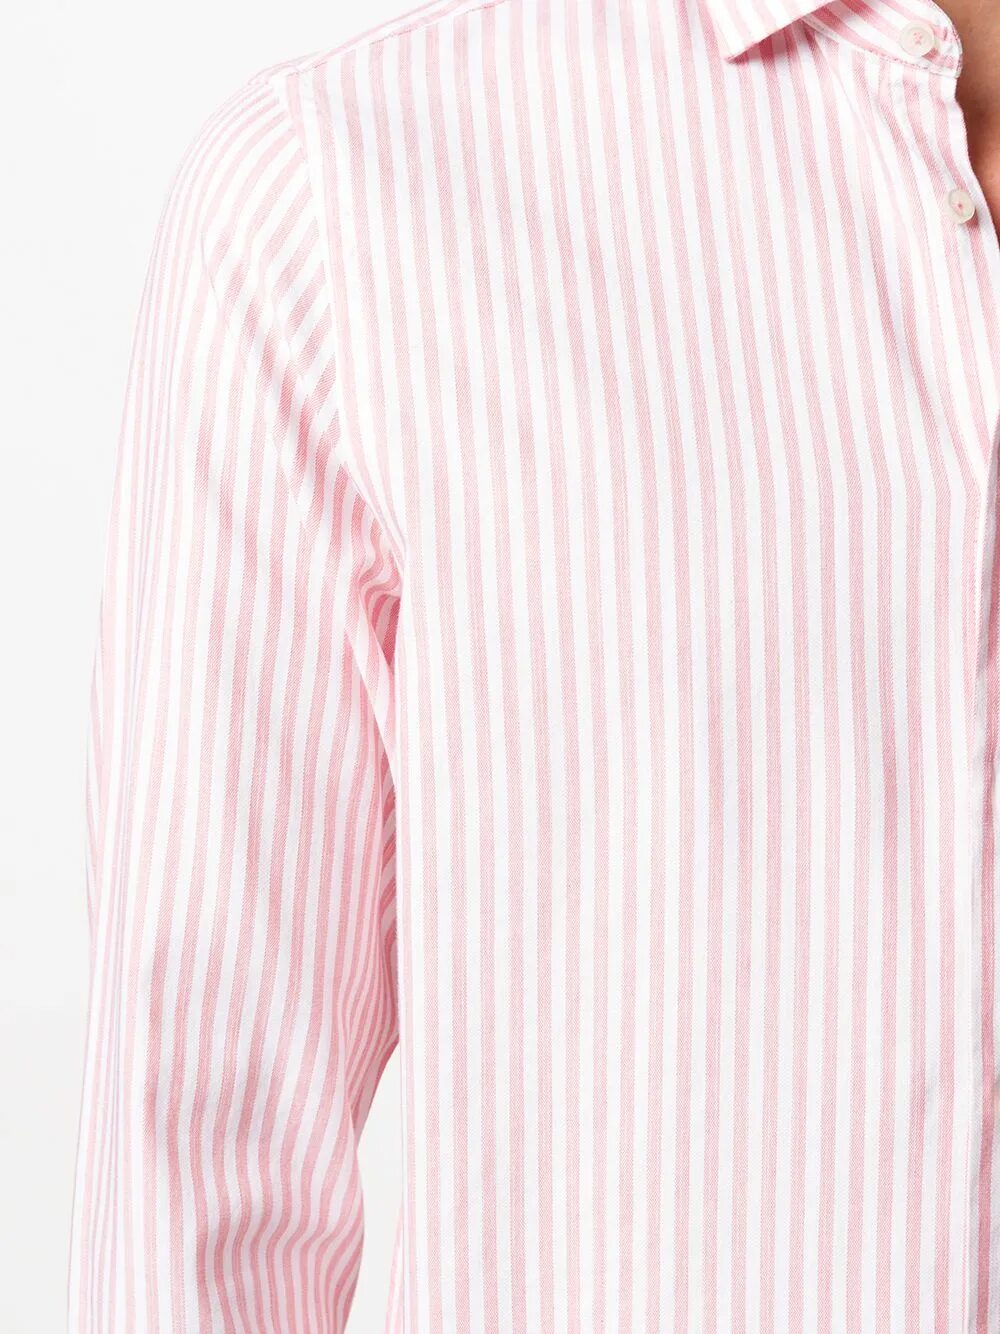 Рубашка Томми Хилфигер в полоску. Рубашка Томми Хилфигер. Рубашка Томми Хилфигер розовая. Розовая рубашка Tommy Hilfiger. Розовая рубашка в полоску